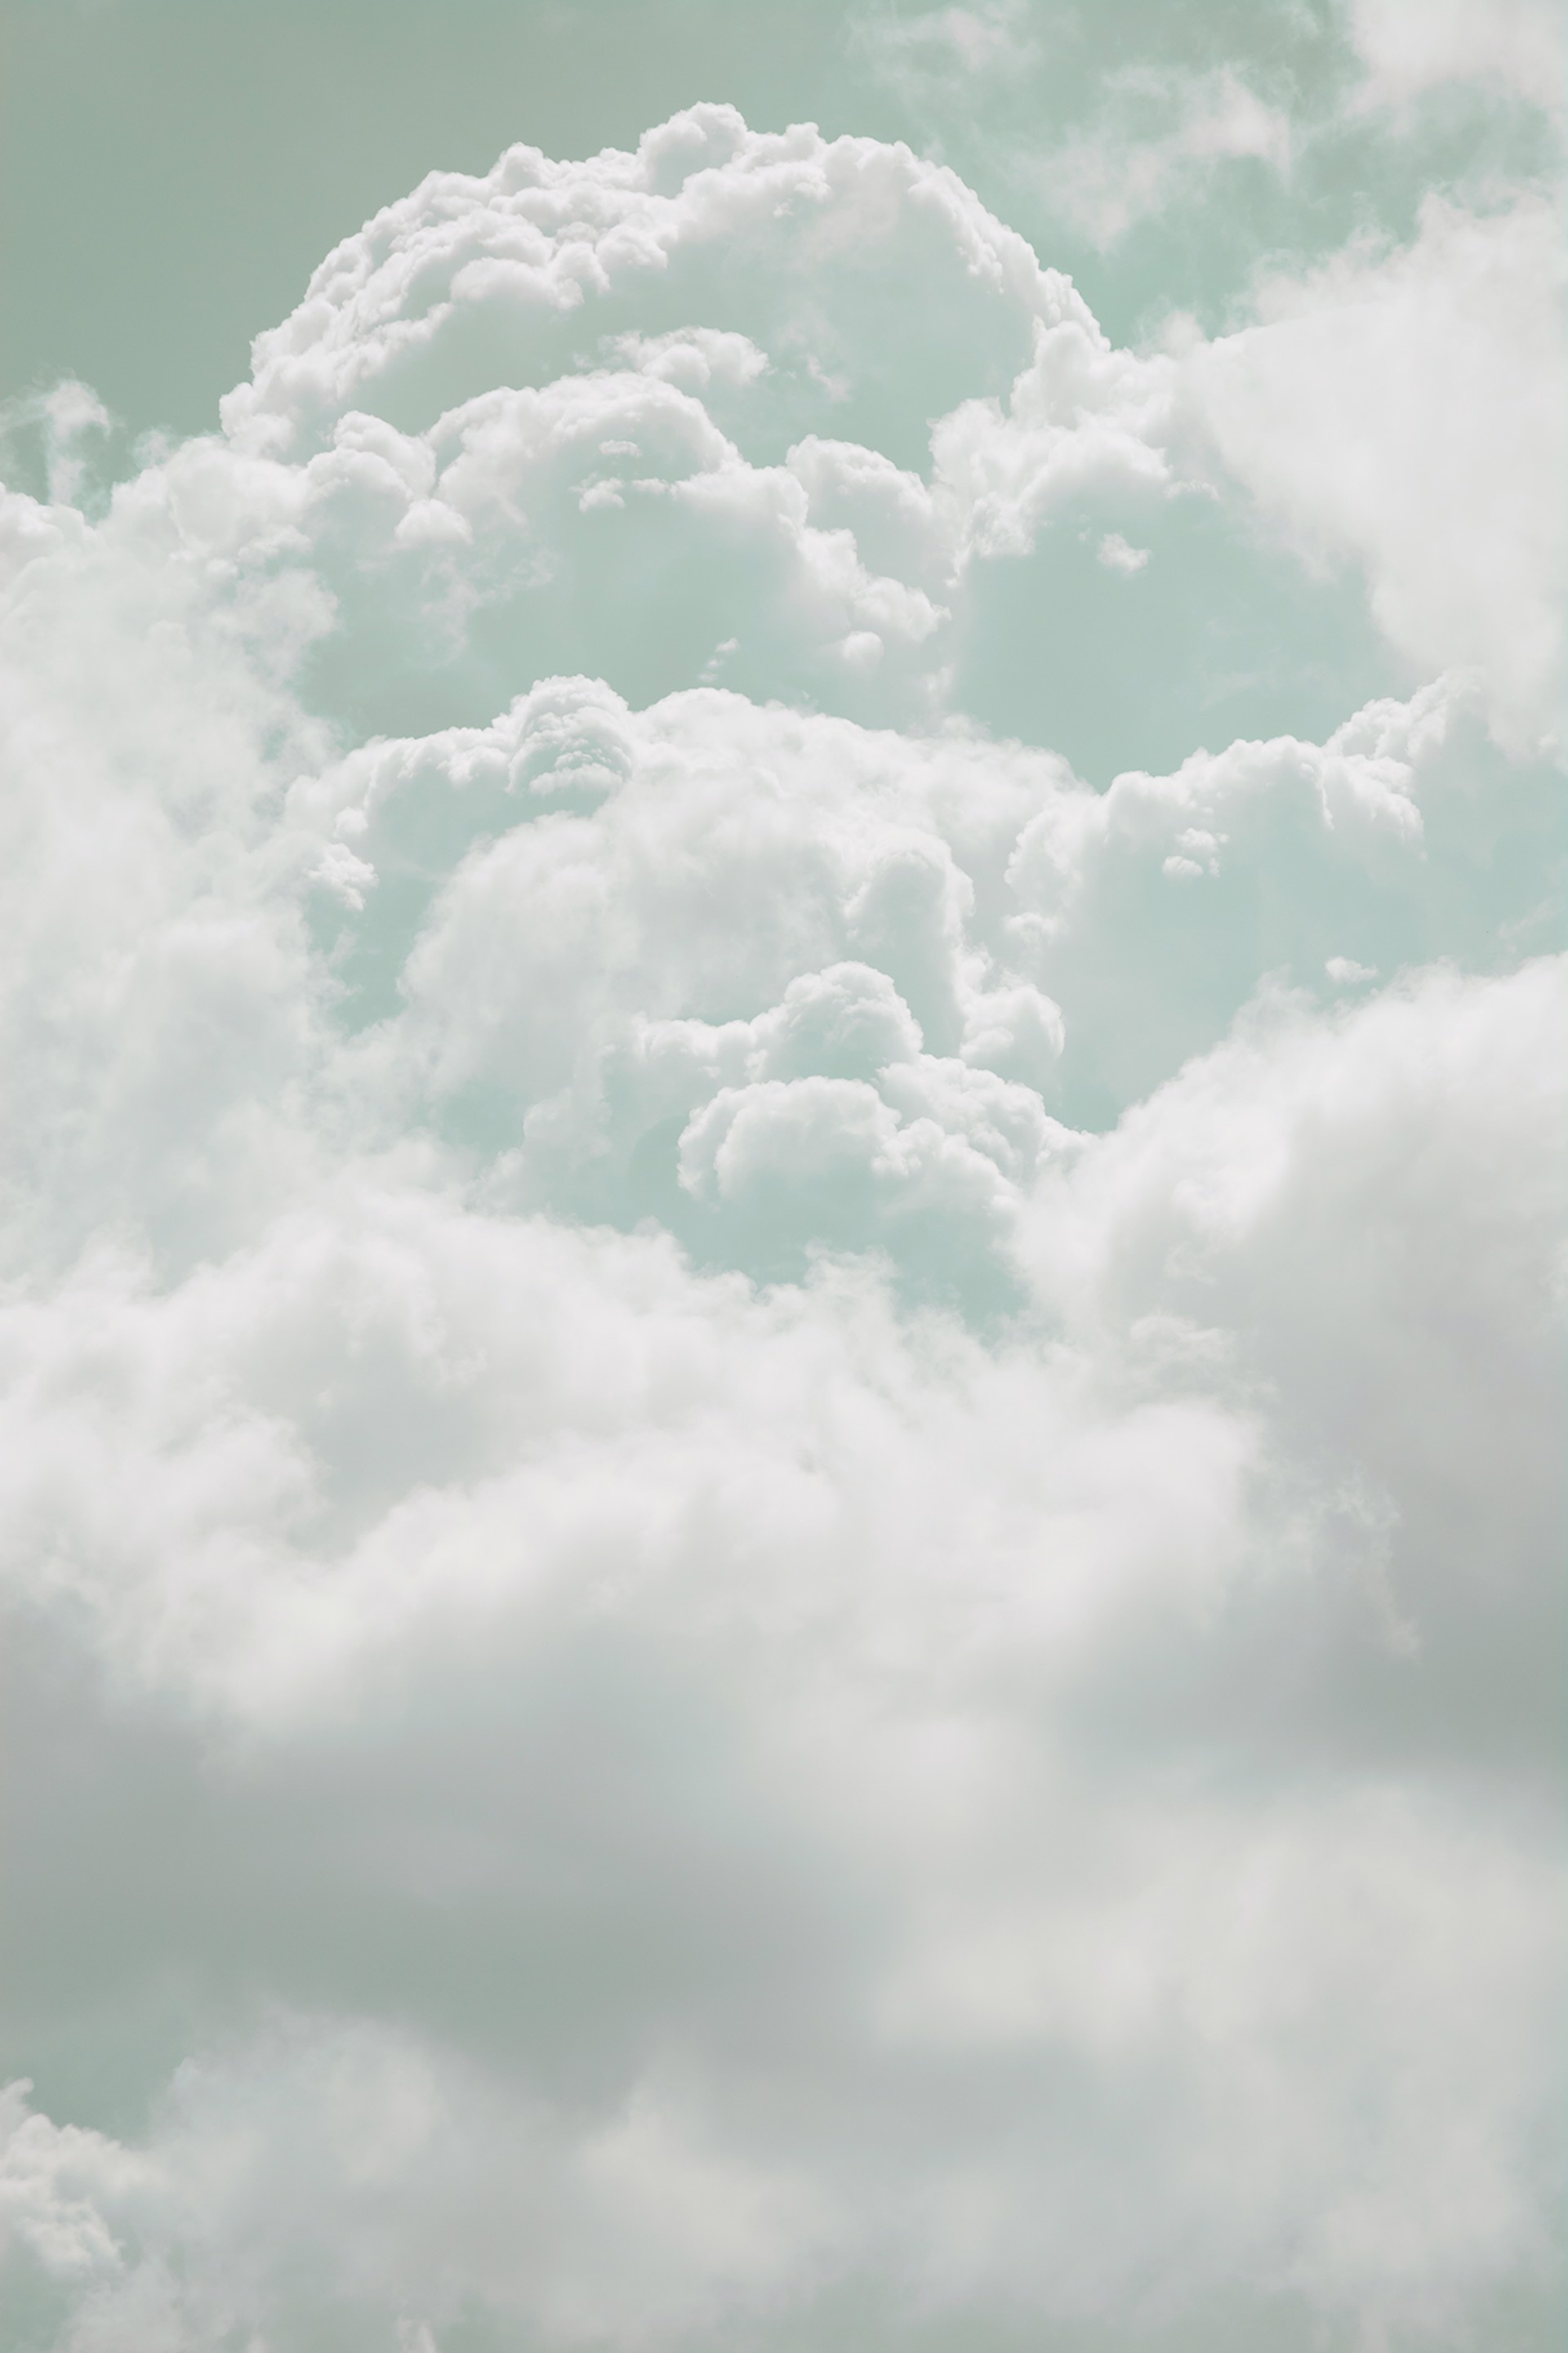 Clouds #7 by Tal Paz-Fridman